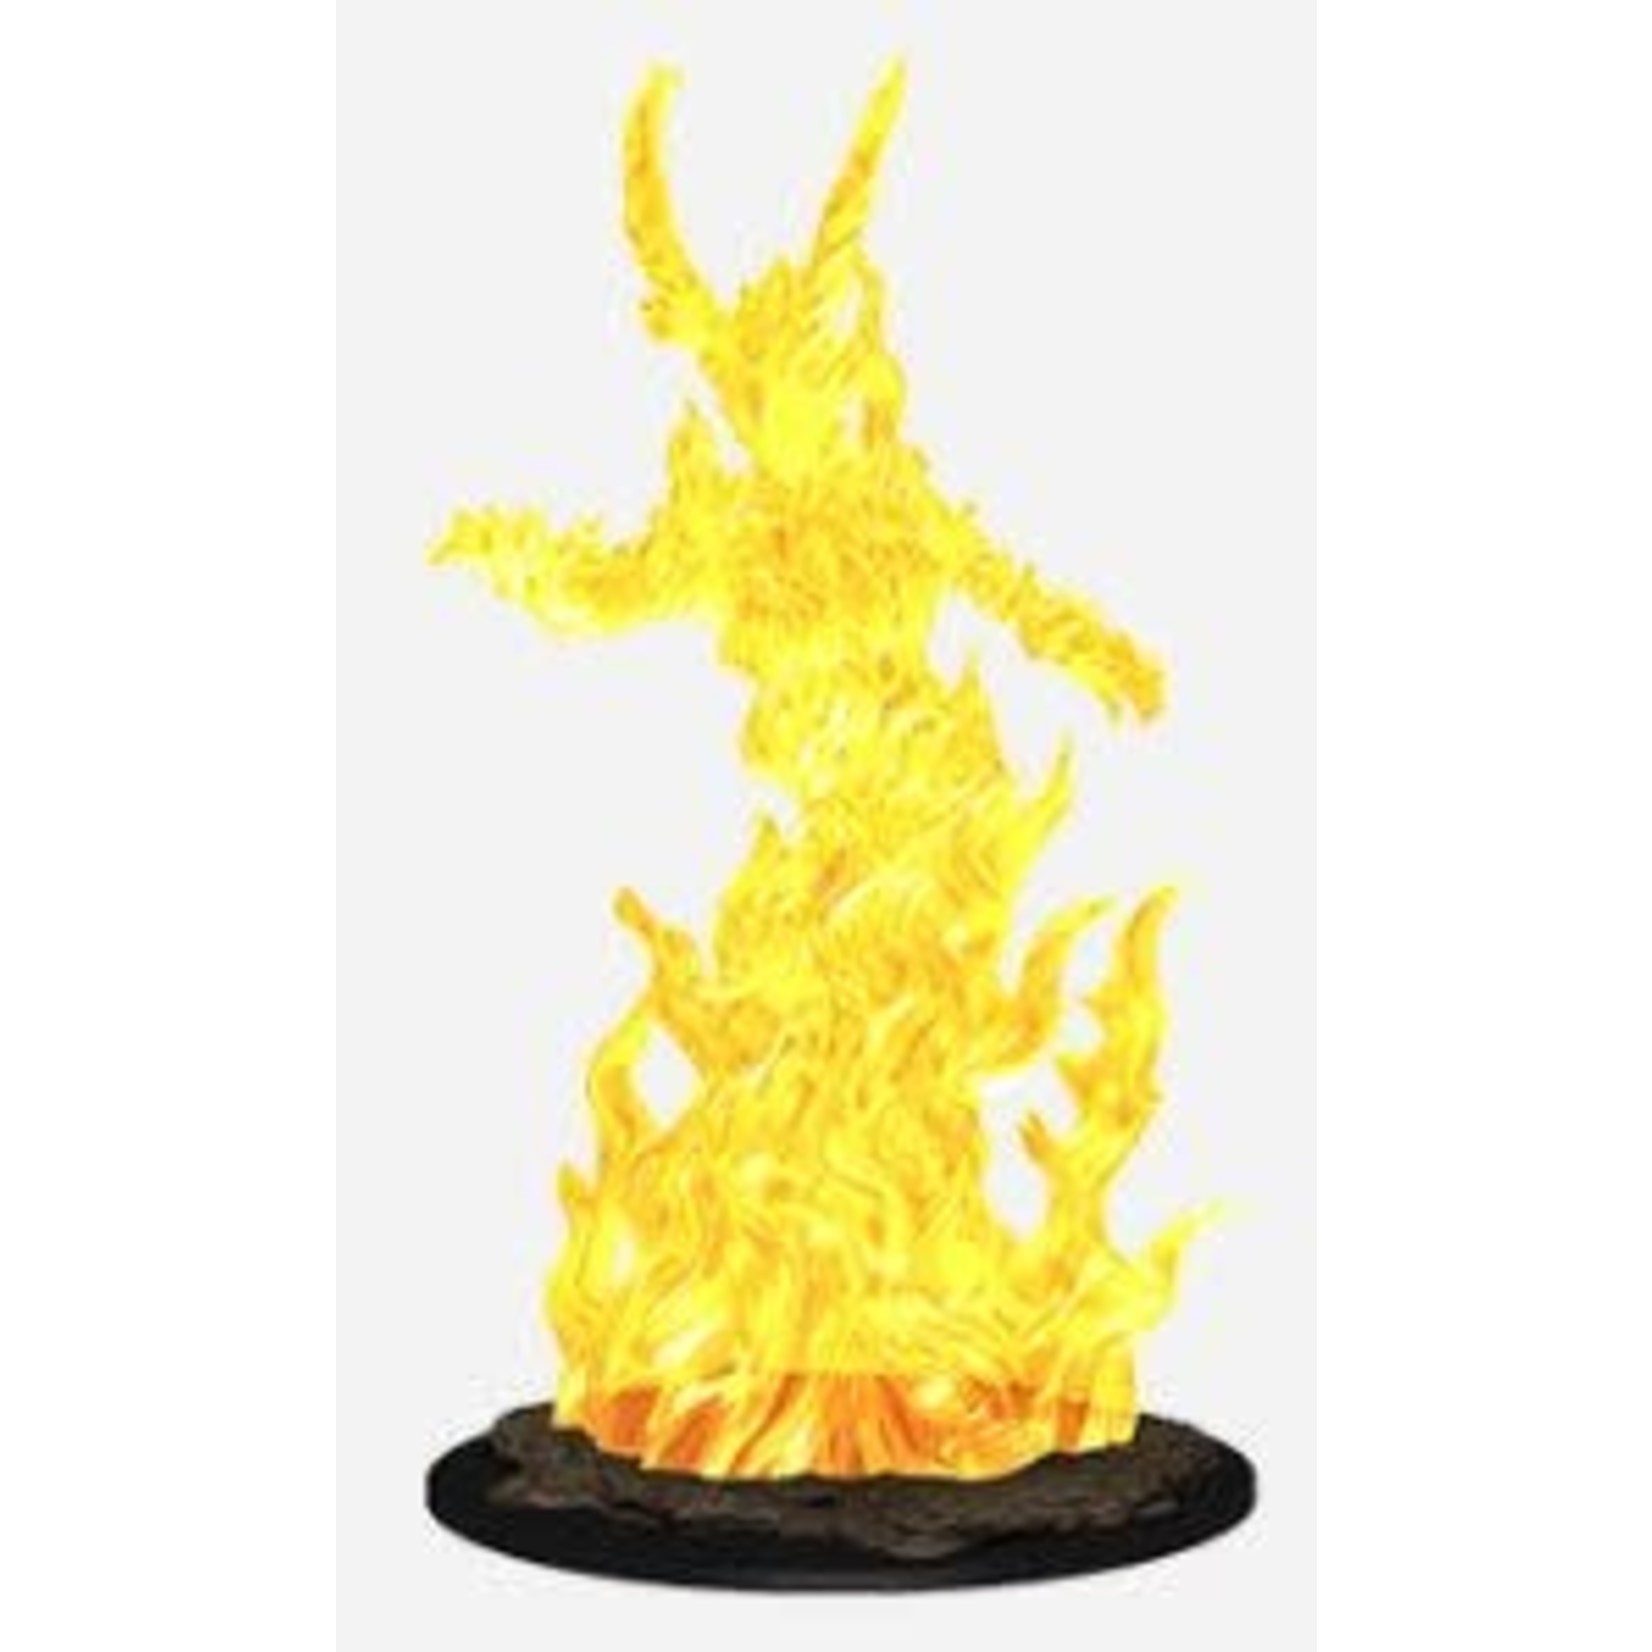 Wizkids Wizkids Pathfinder Deep Cuts: Huge Fire Elemental Lord (1)